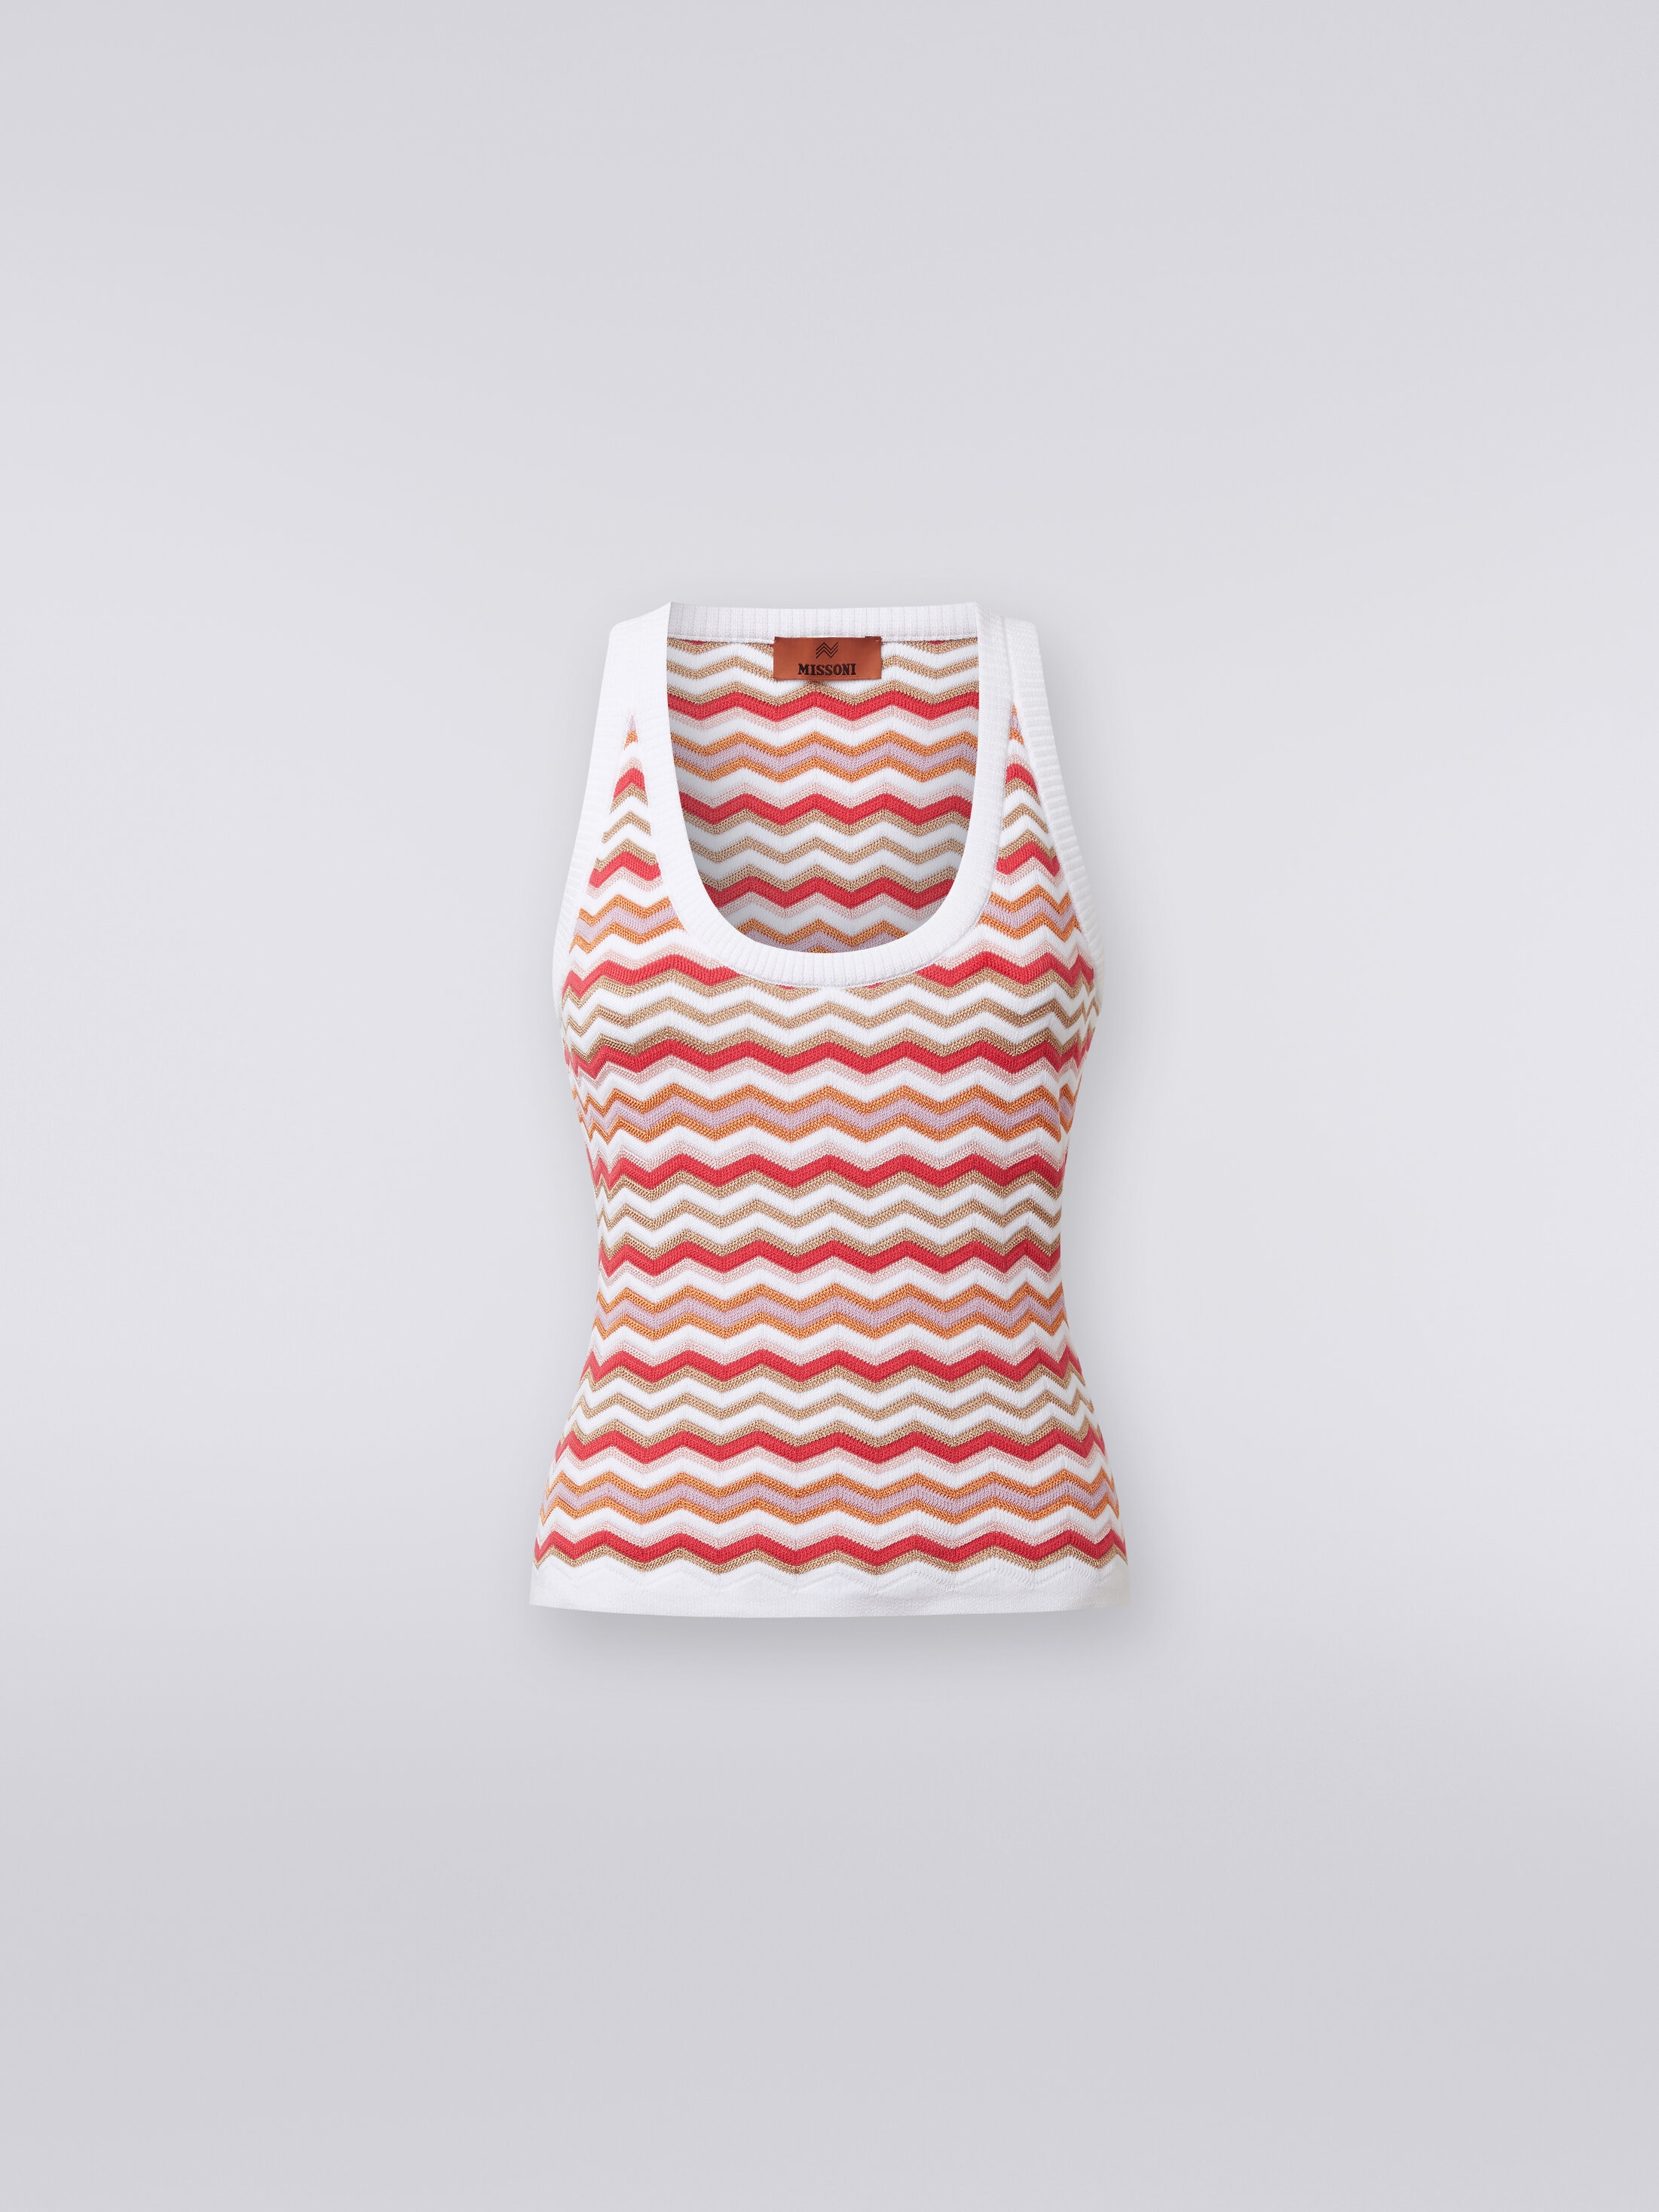 Tank top in zigzag viscose and cotton knit Multicoloured | Missoni